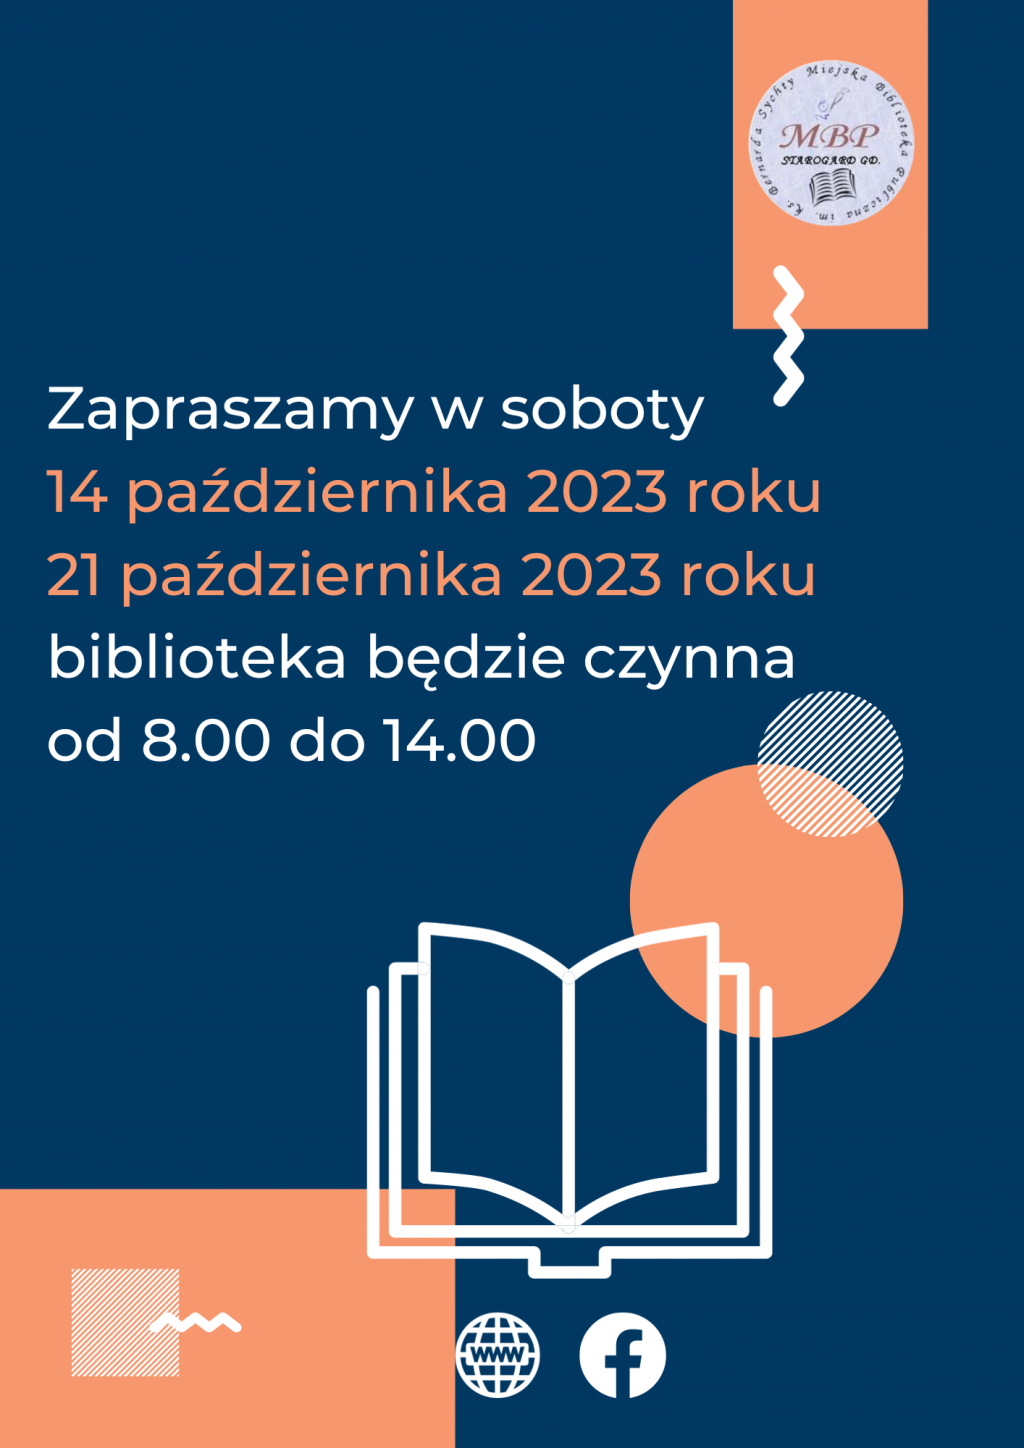 Plakat informujący o pracujących sobotach: 14 października 2023 i 21 października 2023 roku, biblioteka będzie czynna od 8.00 do 14.00. Miejska Biblioteka Publiczna w Starogardzie Gdańskim.